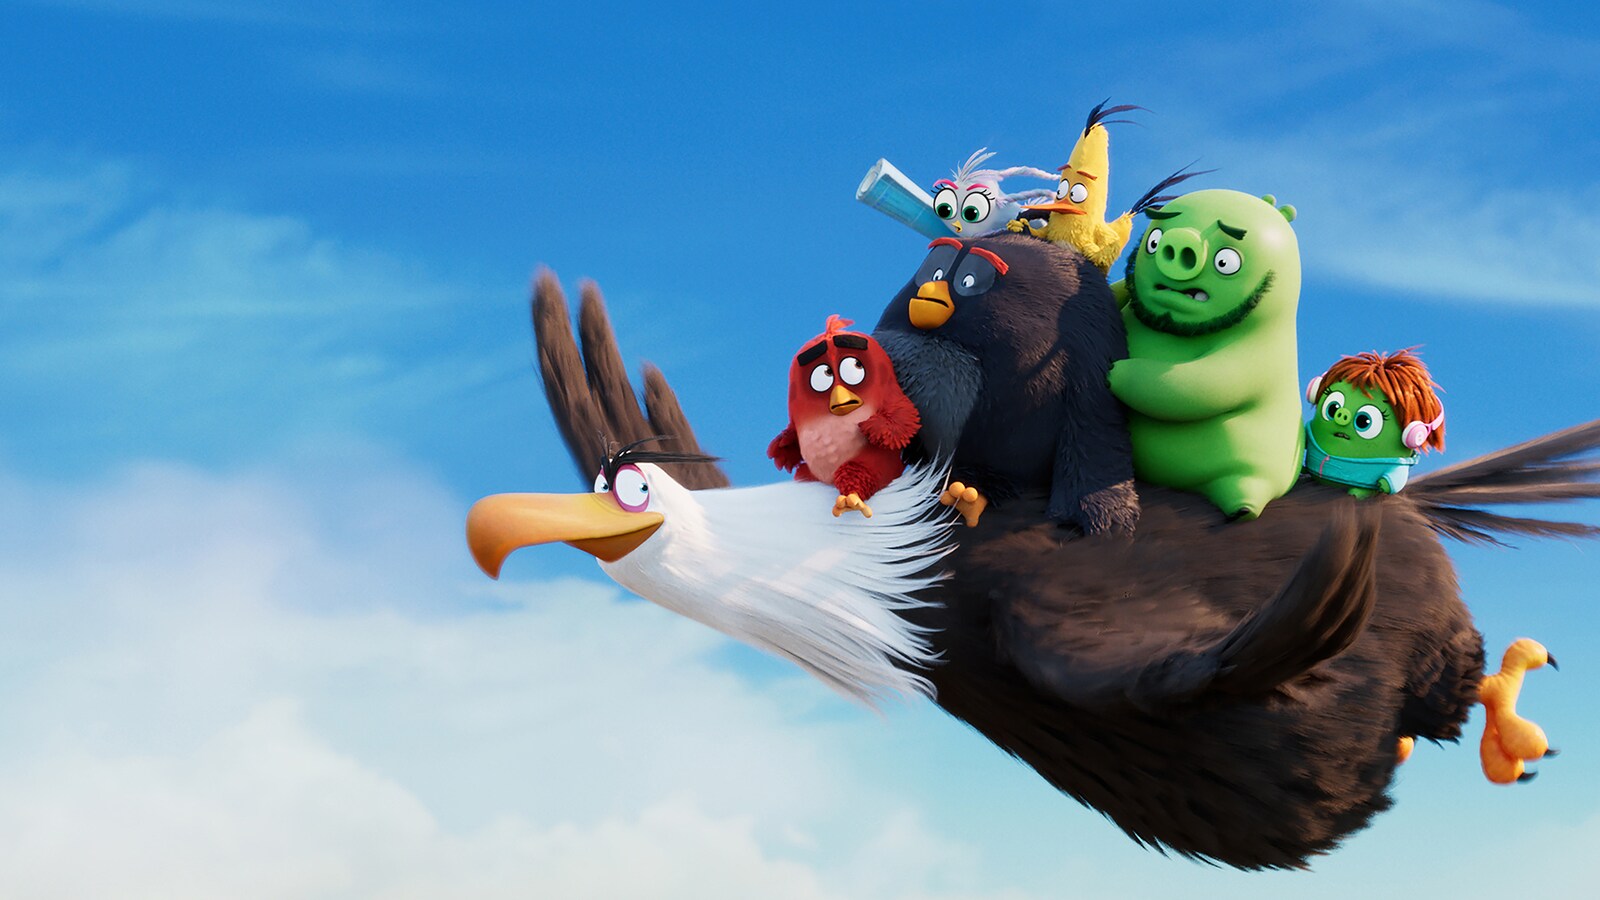 Katso Angry Birds -elokuva 2 .Videovuokraamo netissä - Viaplay